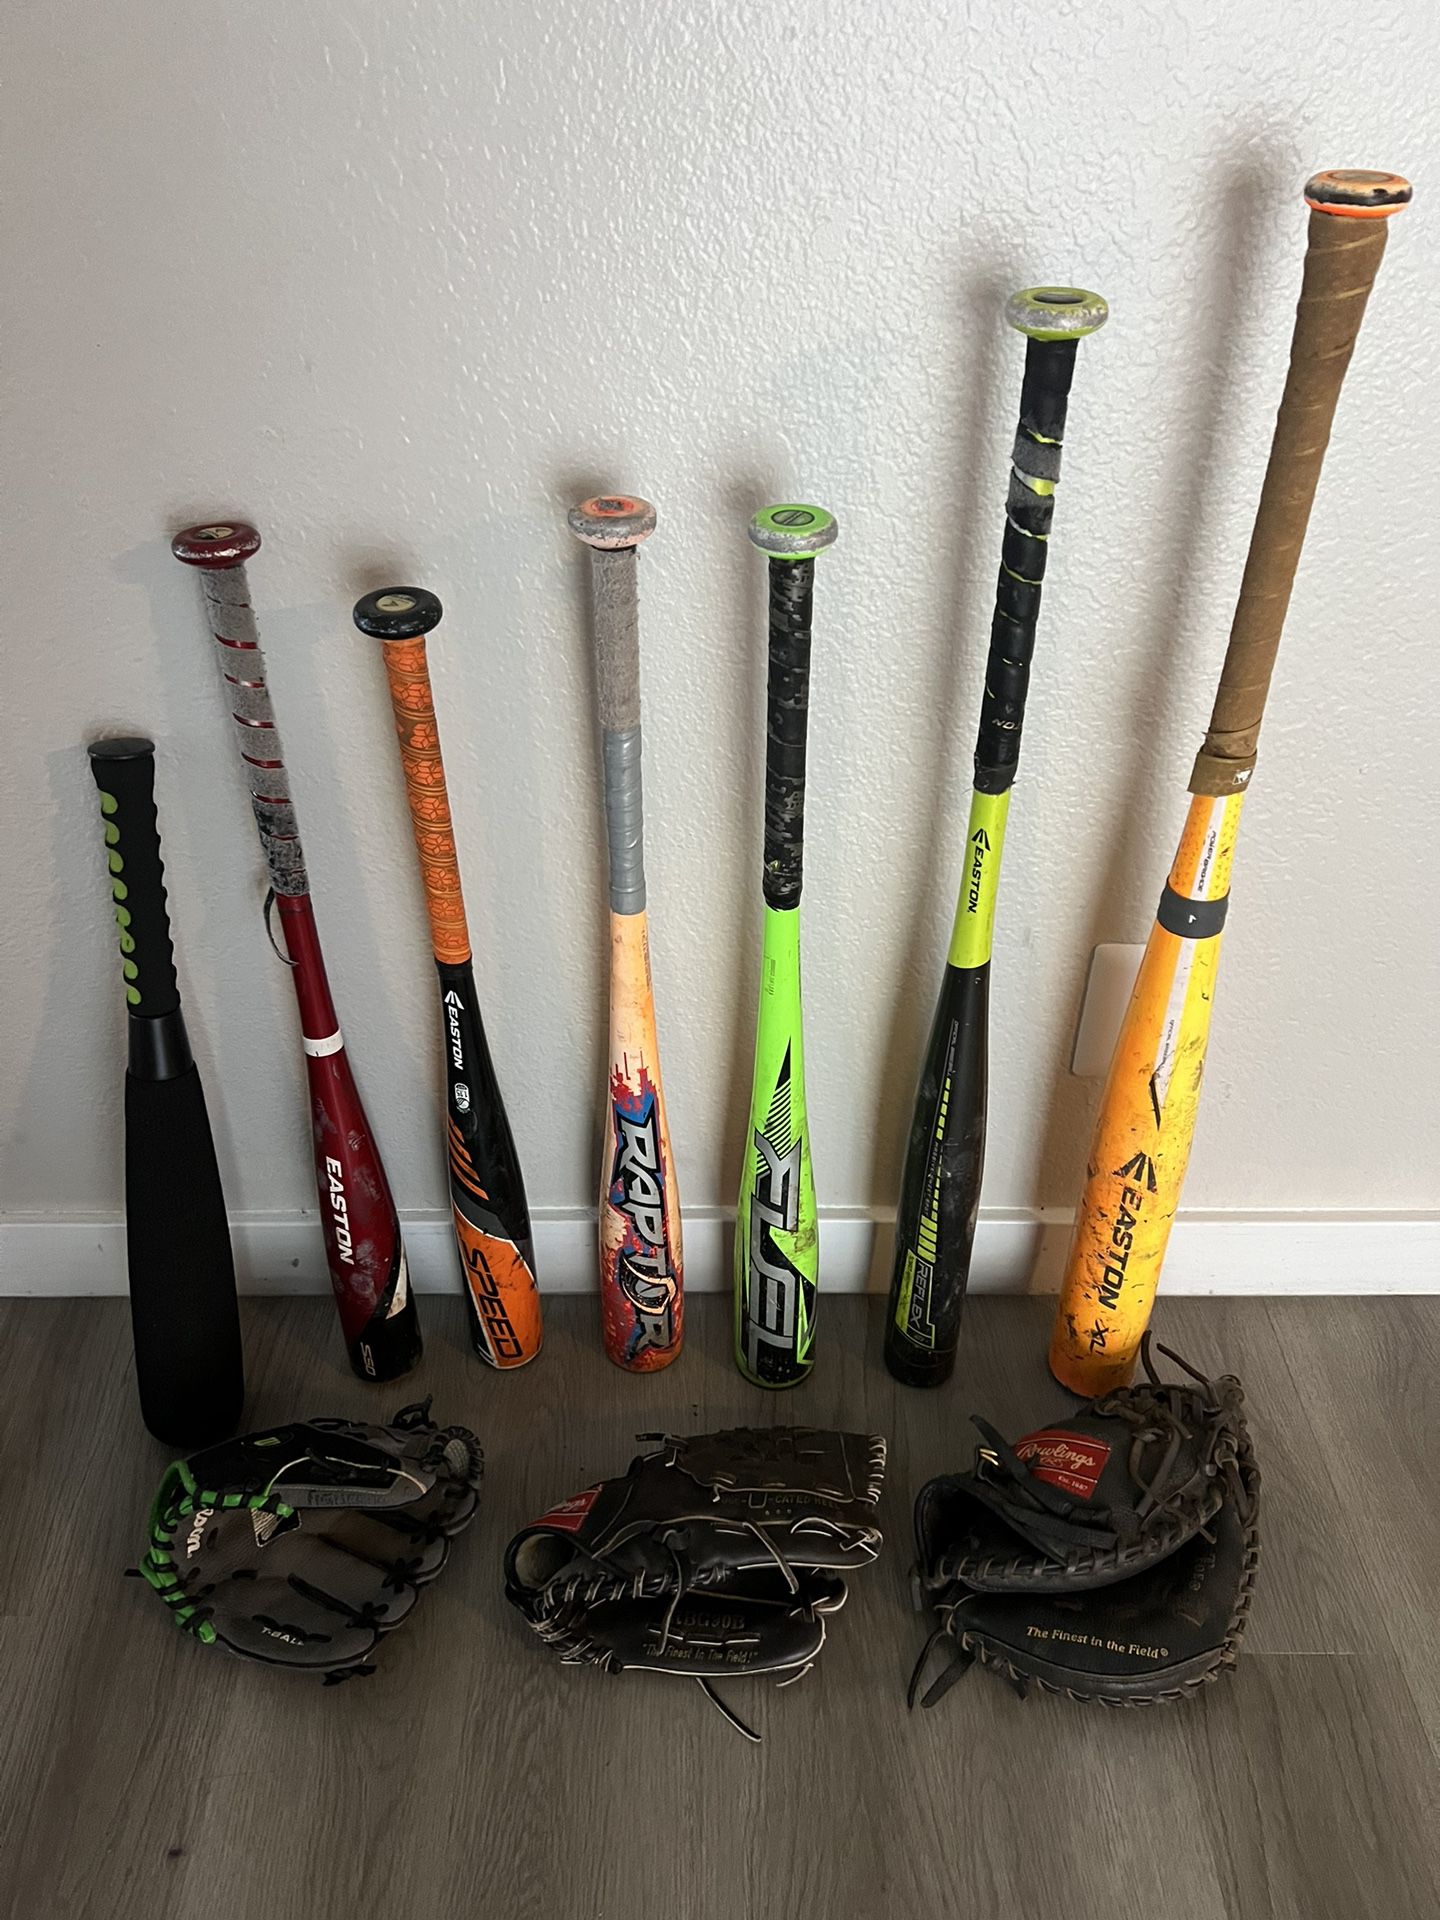 Baseball Bats And Gloves 